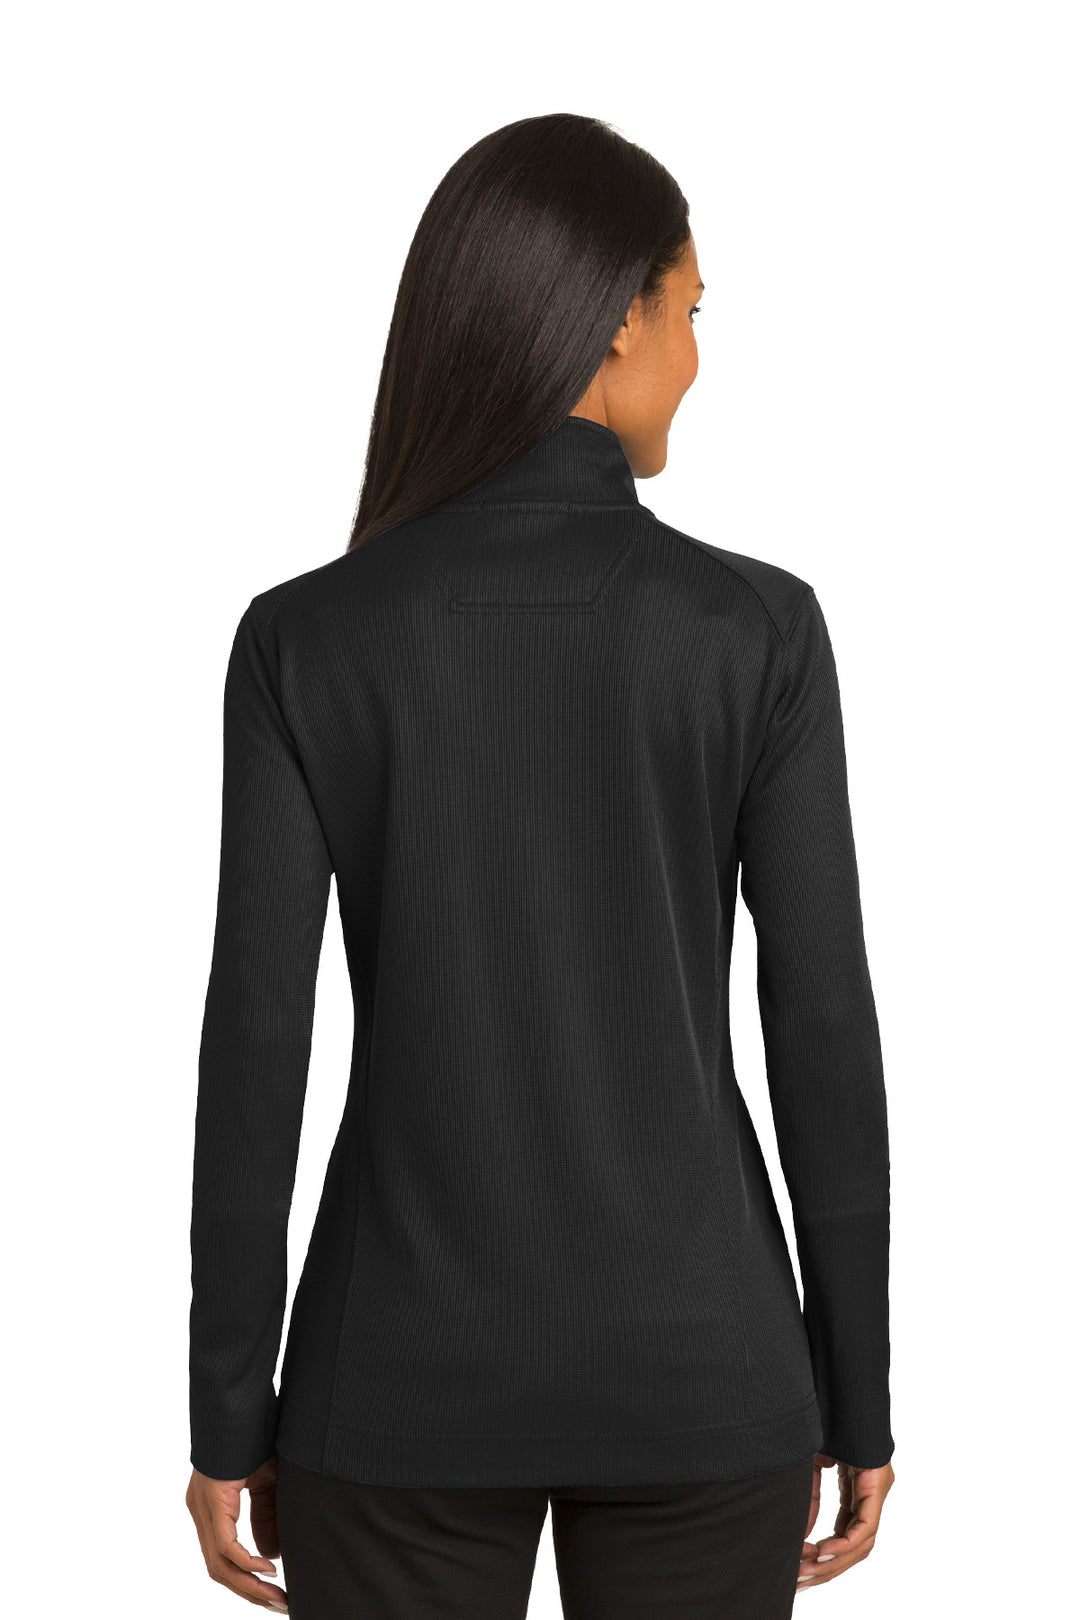 Ladies Vertical Texture Full-Zip Jacket